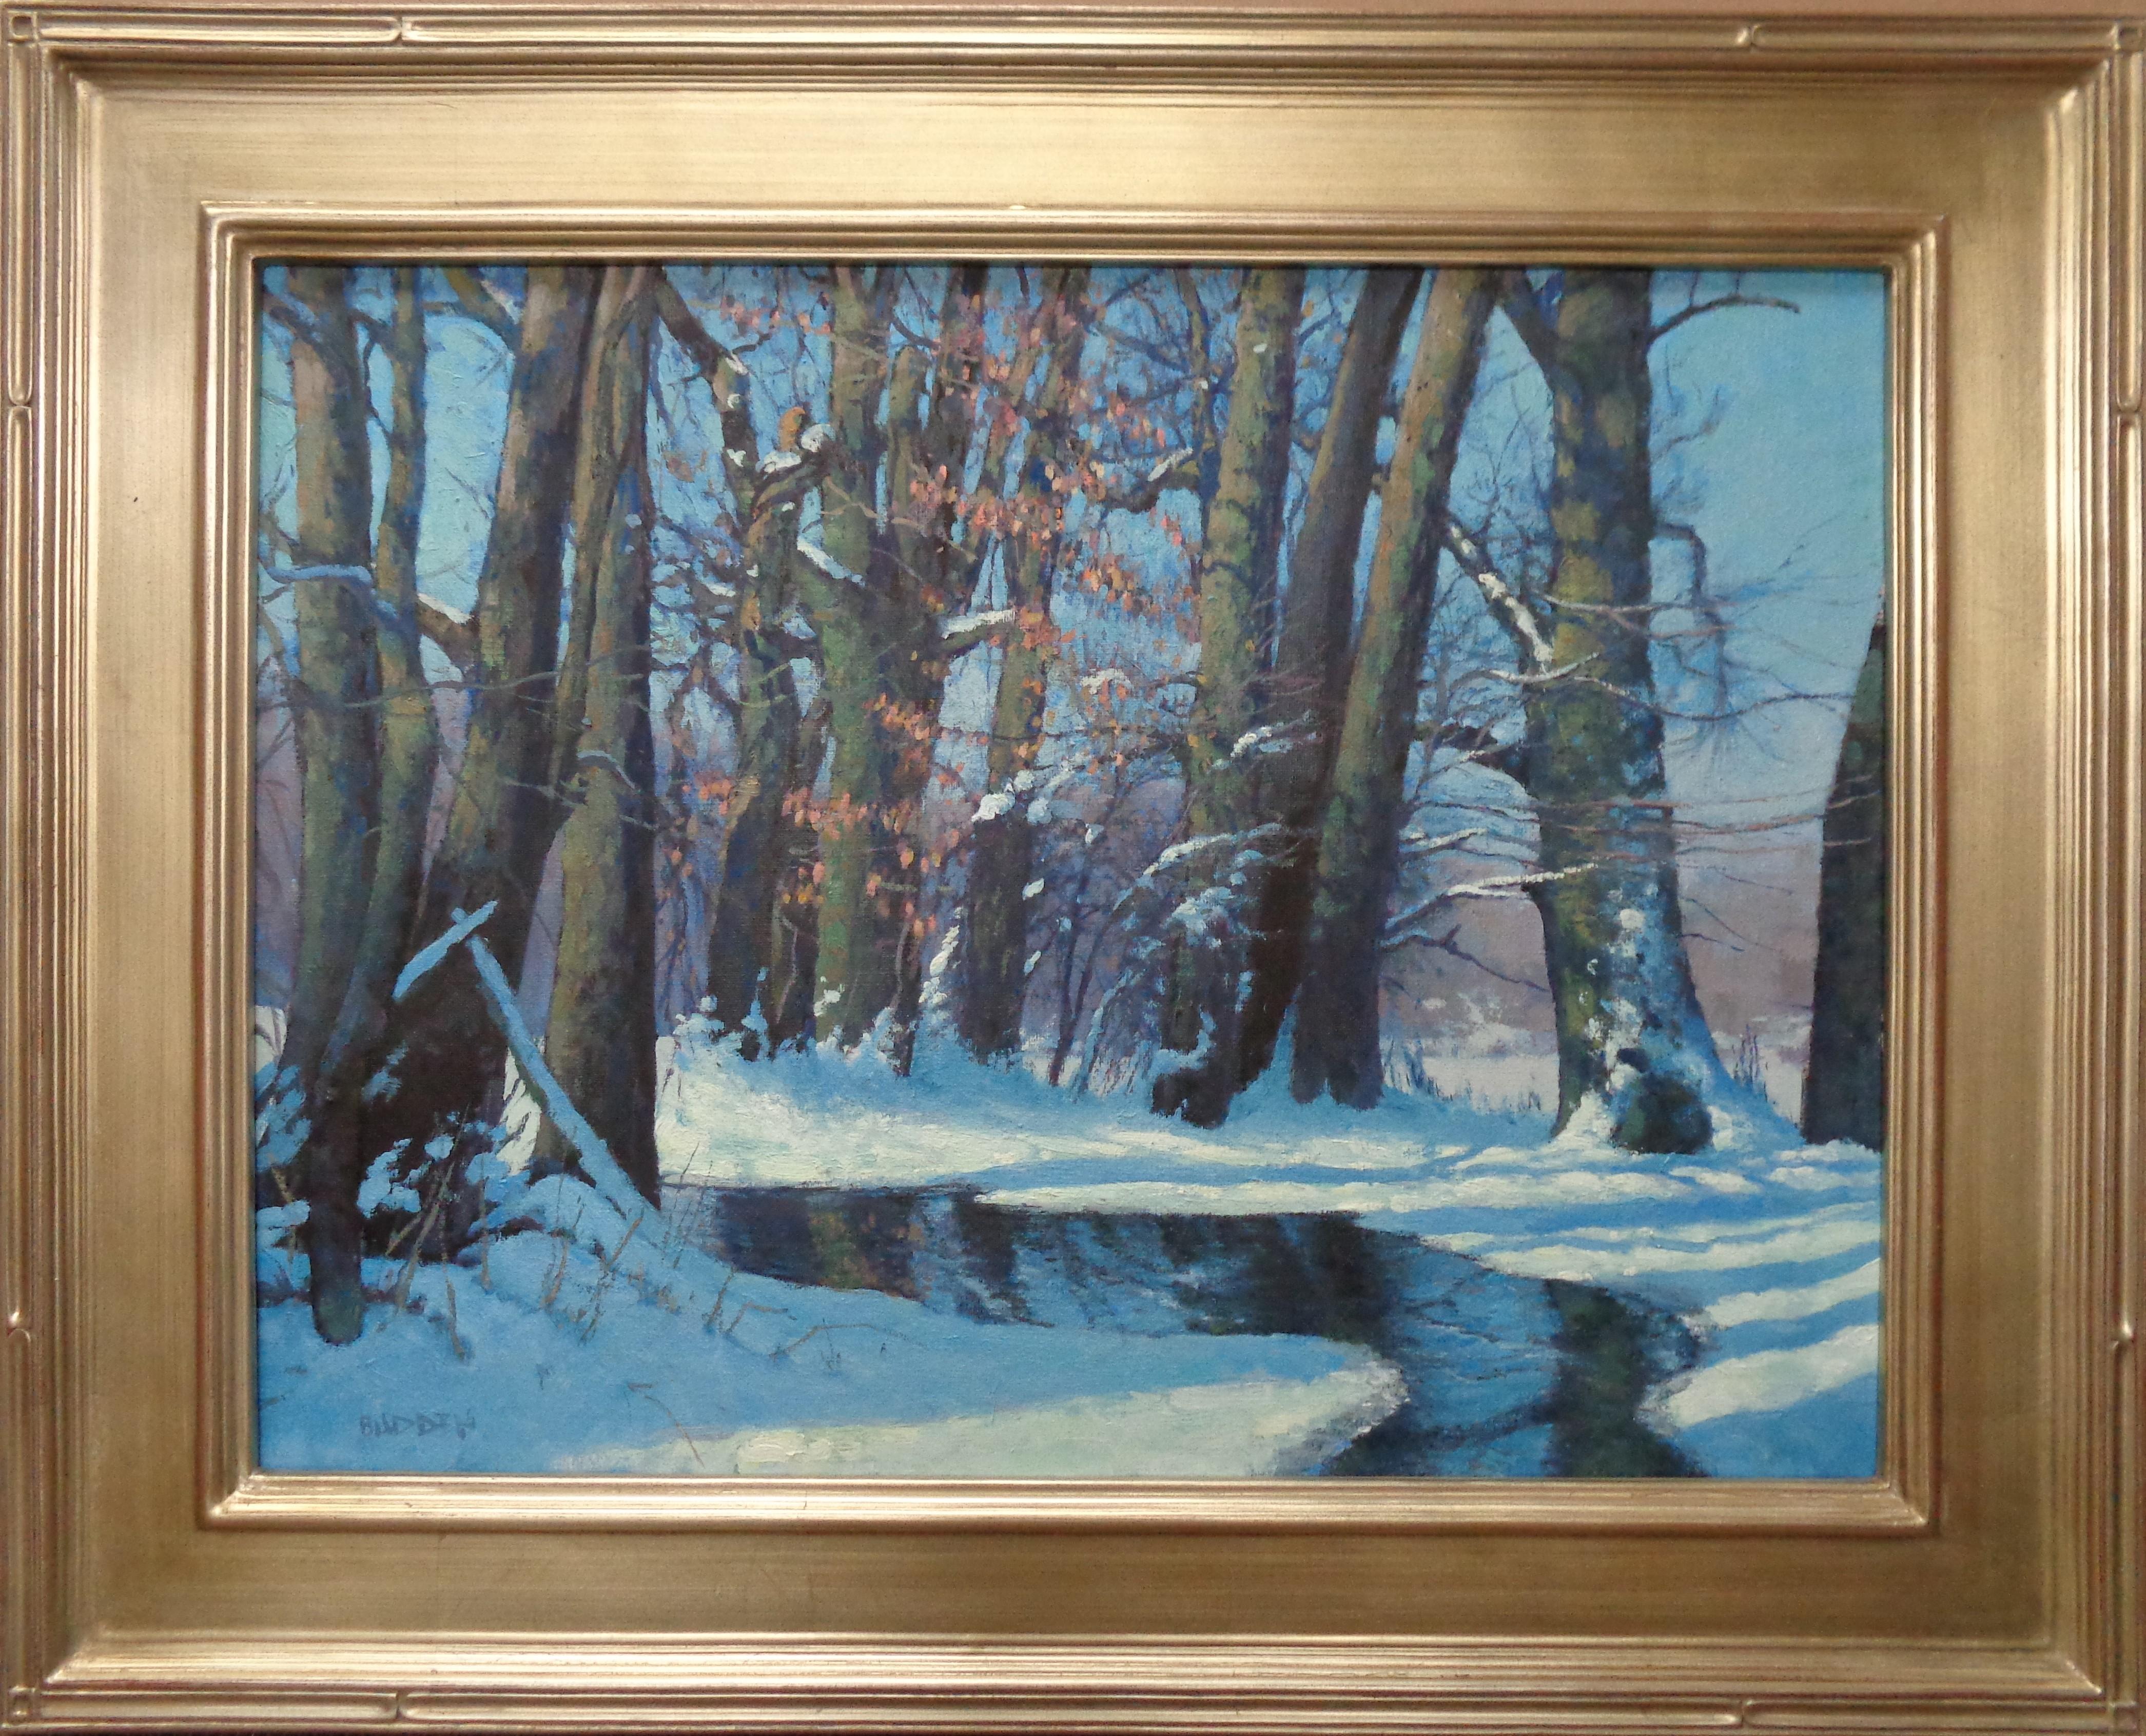 Winter-Muster
Öl/Leinen
18 x 24 ungerahmt, 24,38 x 30,5x1 gerahmt
Winter Patterns ist ein Ölgemälde auf Leinen des preisgekrönten zeitgenössischen Künstlers Michael Budden, das eine winterliche Waldlandschaft und einen Bach mit einem schönen Spiel